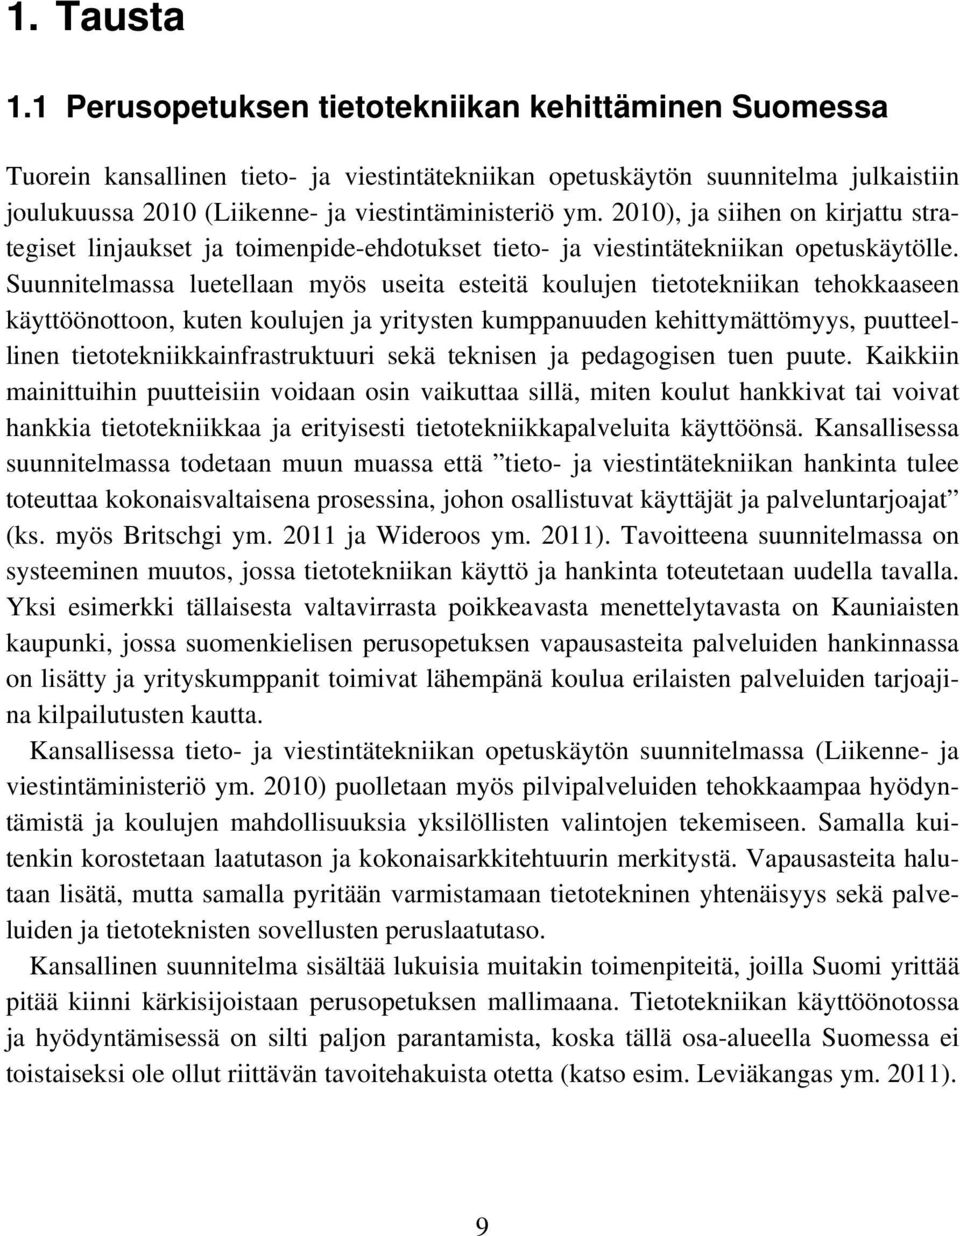 1 Perusopetuksen tietotekniikan kehittäminen Suomessa Tuorein kansallinen tieto- ja viestintätekniikan opetuskäytön suunnitelma julkaistiin joulukuussa 2010 (Liikenne- ja viestintäministeriö ym.